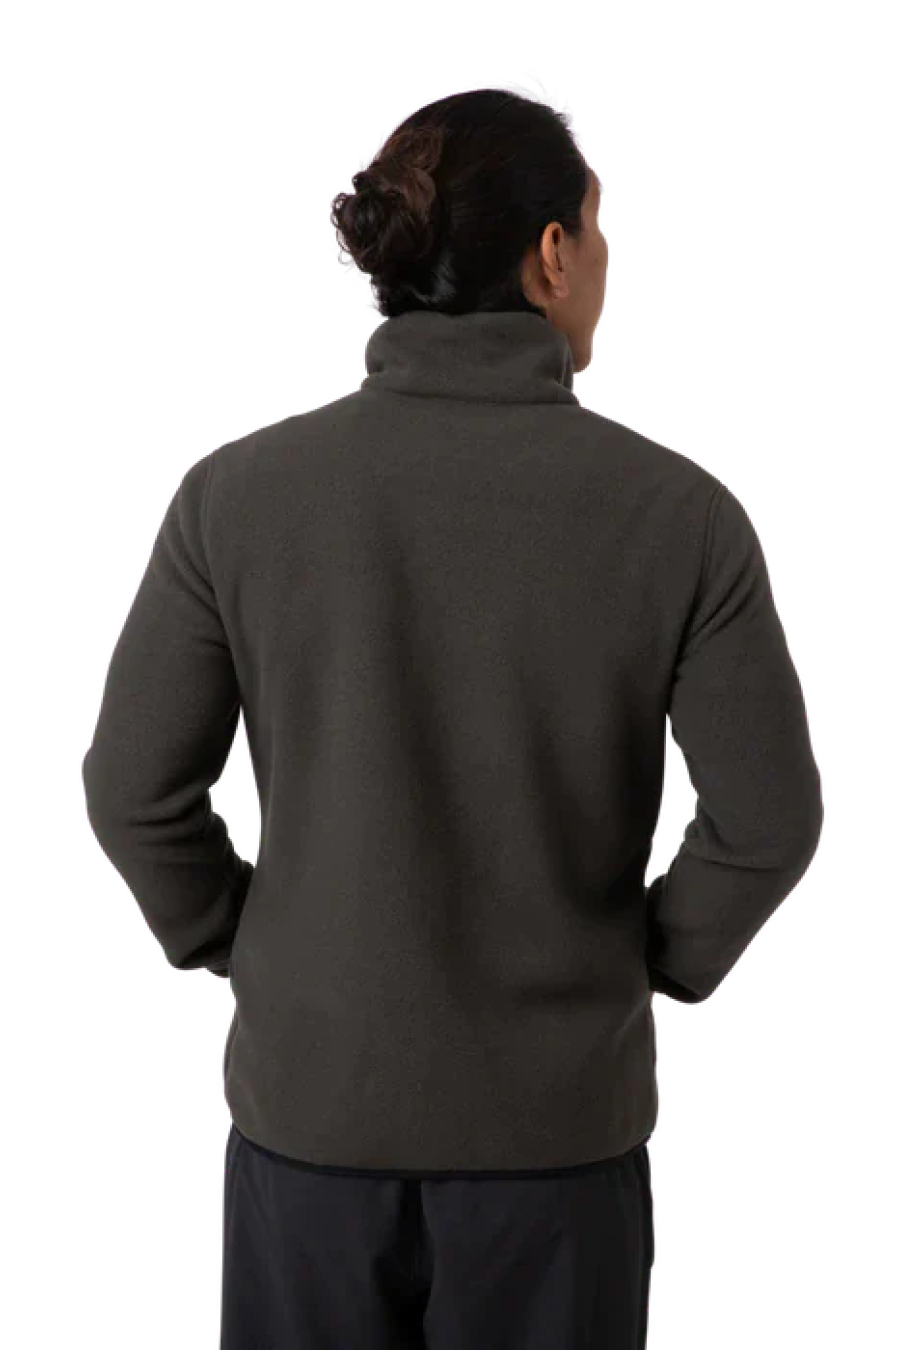 Cotopaxi Teca Fleece Full-Zip Jacket Men's